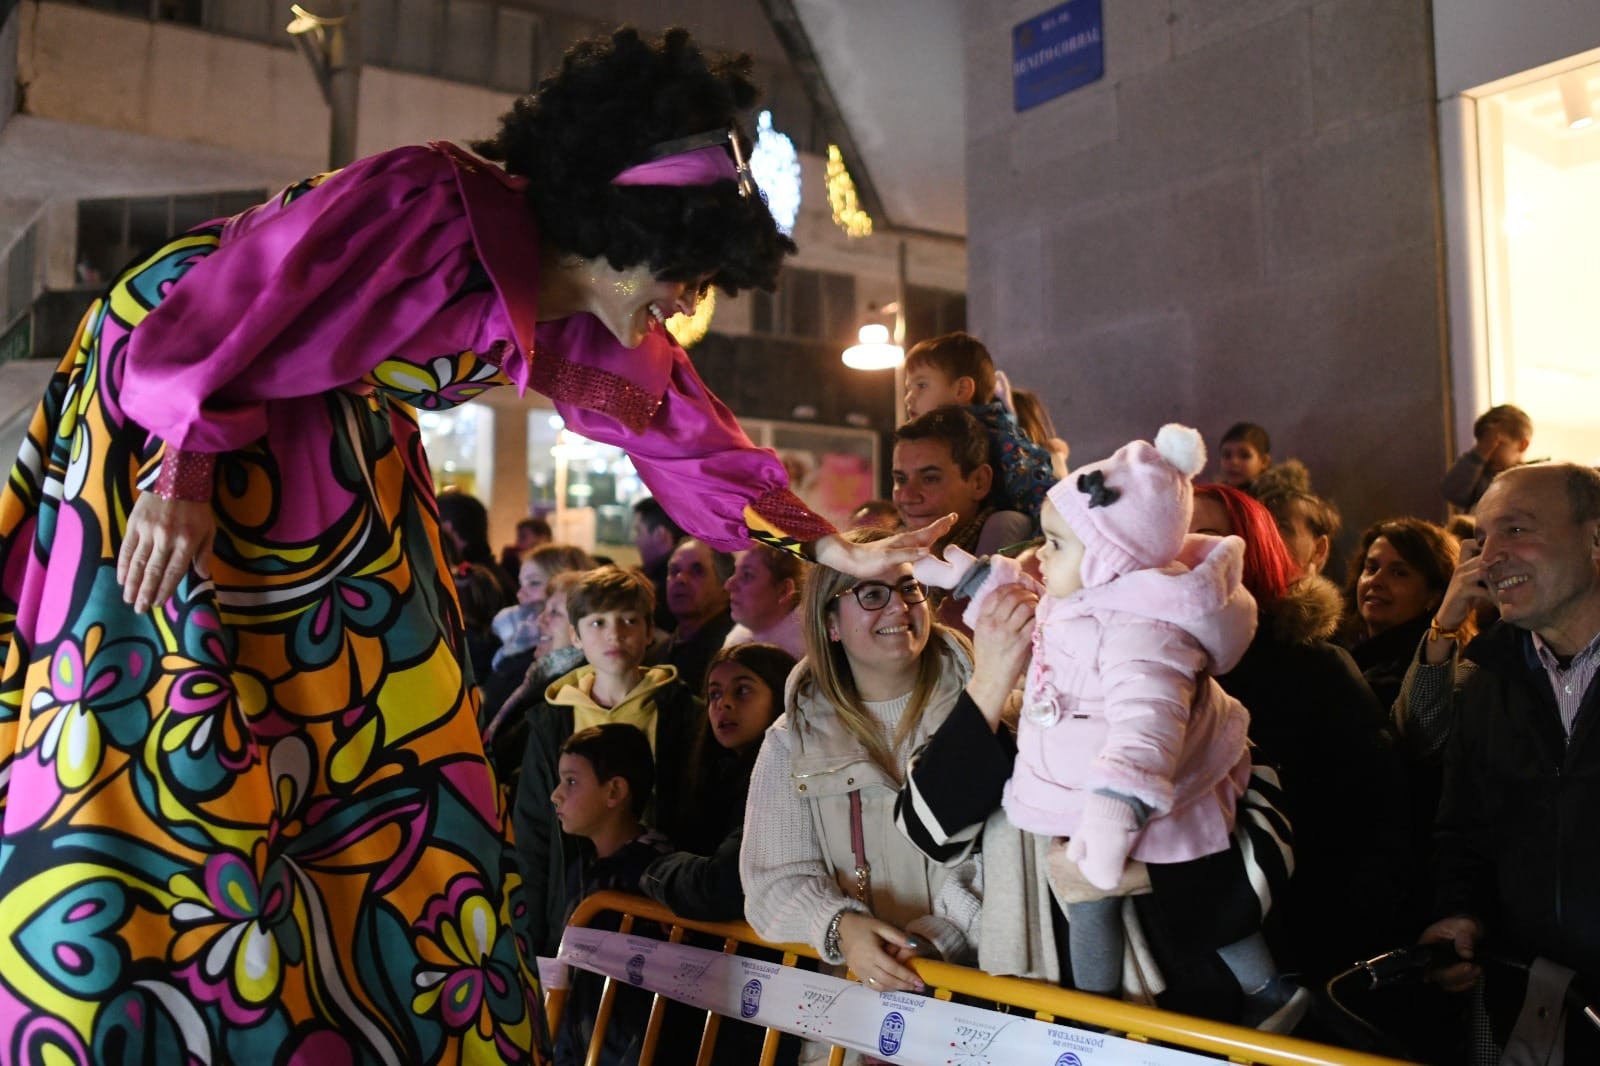 Una de las integrantes de la comitiva de fiestas saluda a una pequeña entre el público. Foto: Concello de Pontevedra